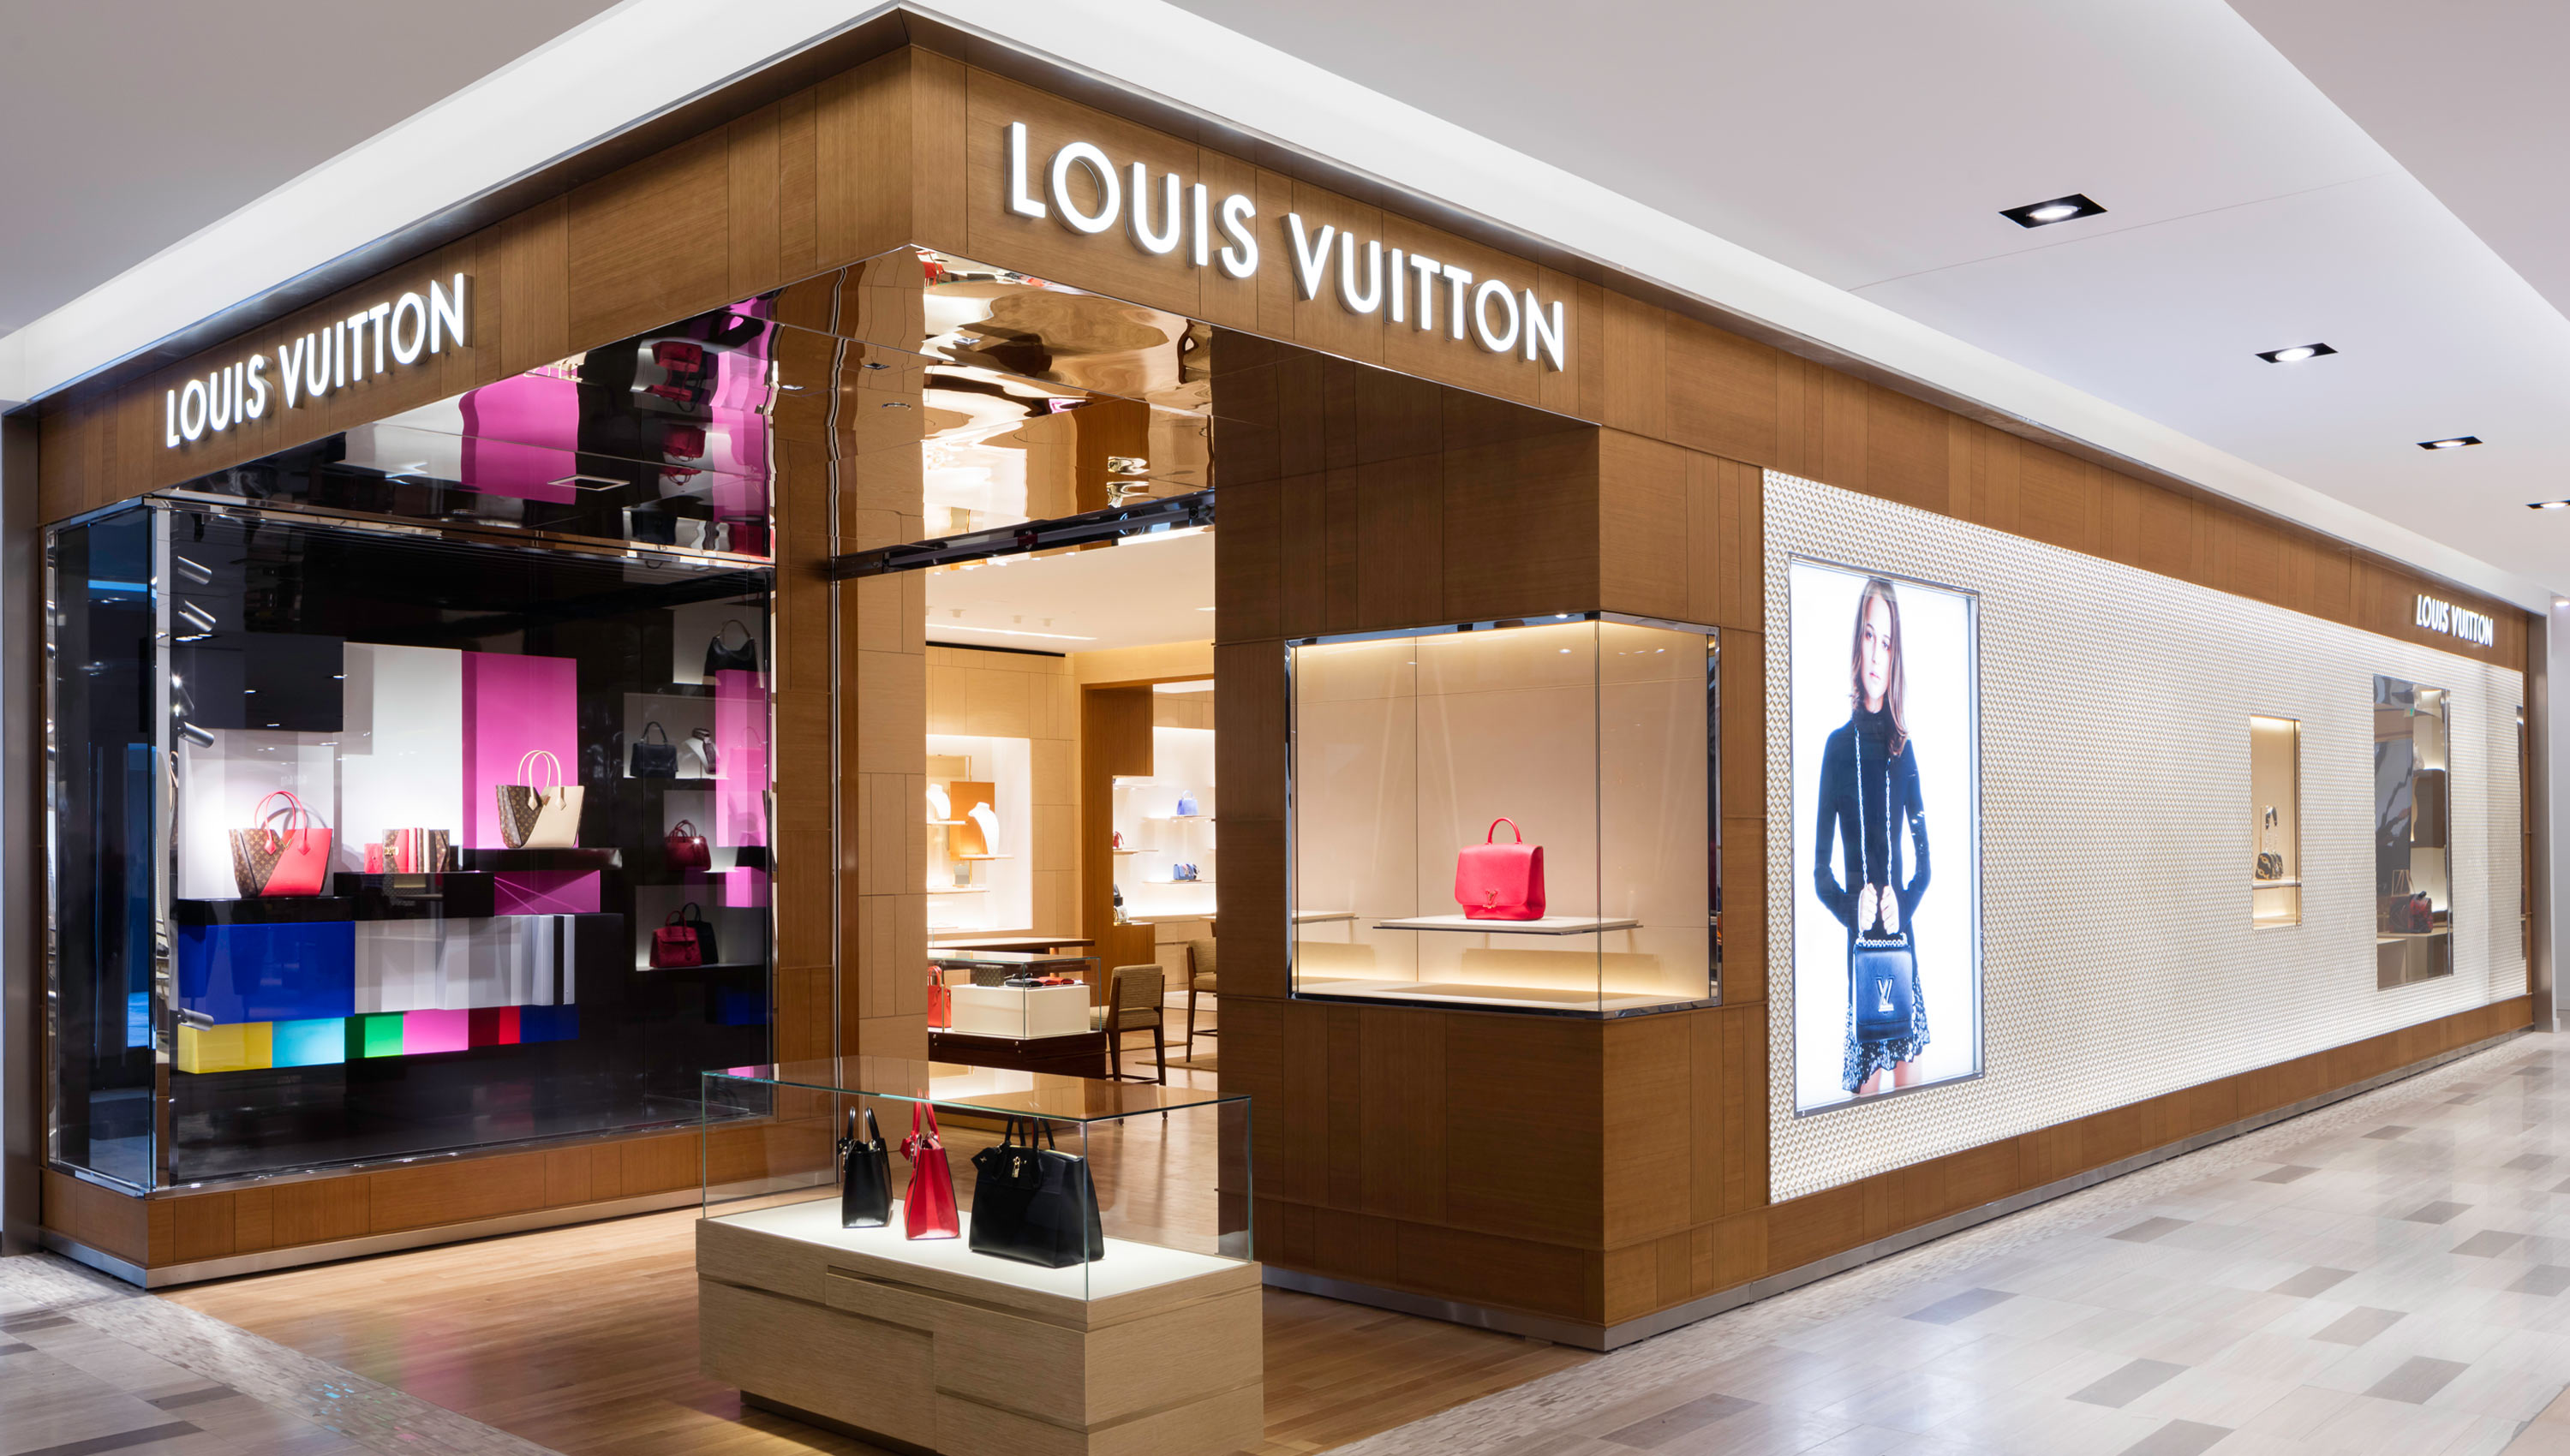 Louis Vuitton Houston Saks - Houston, TX - Company Information